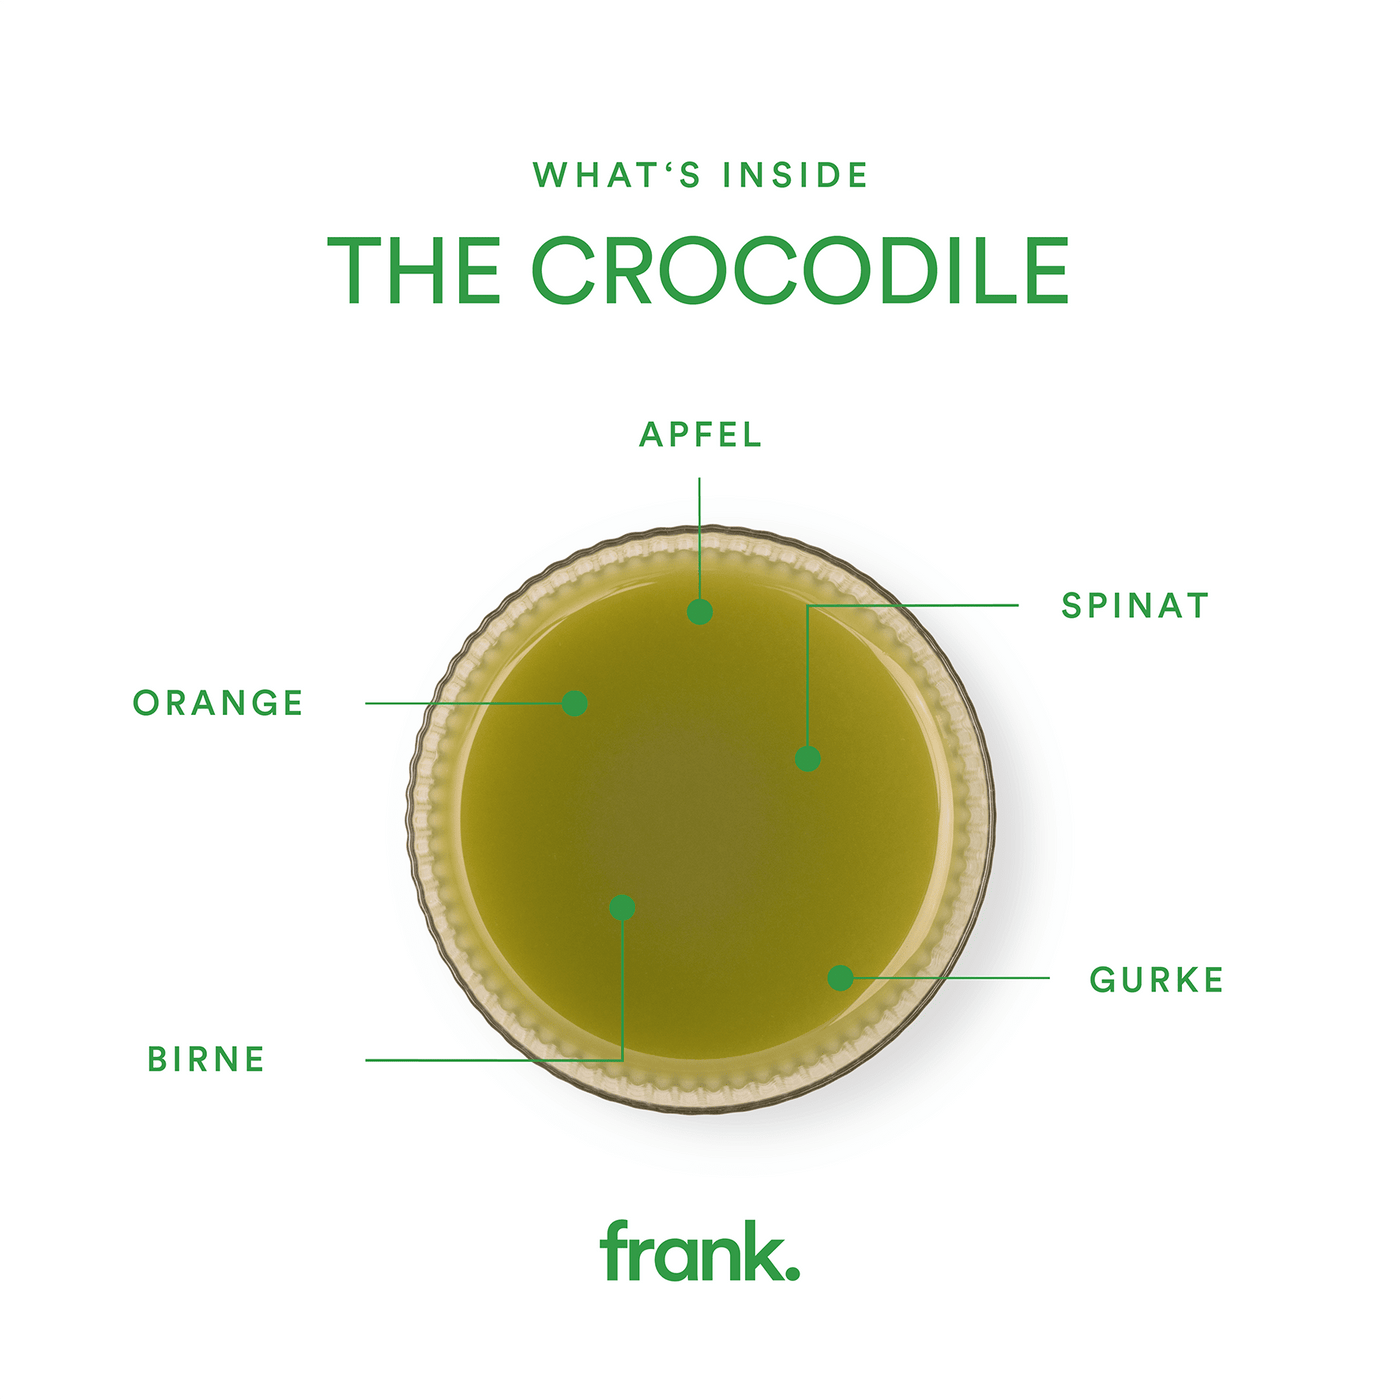 Darstellung des Saft The Crocodile mit Apfel, Spinat, Orange, Birne und Gurke in einem Glas von frank